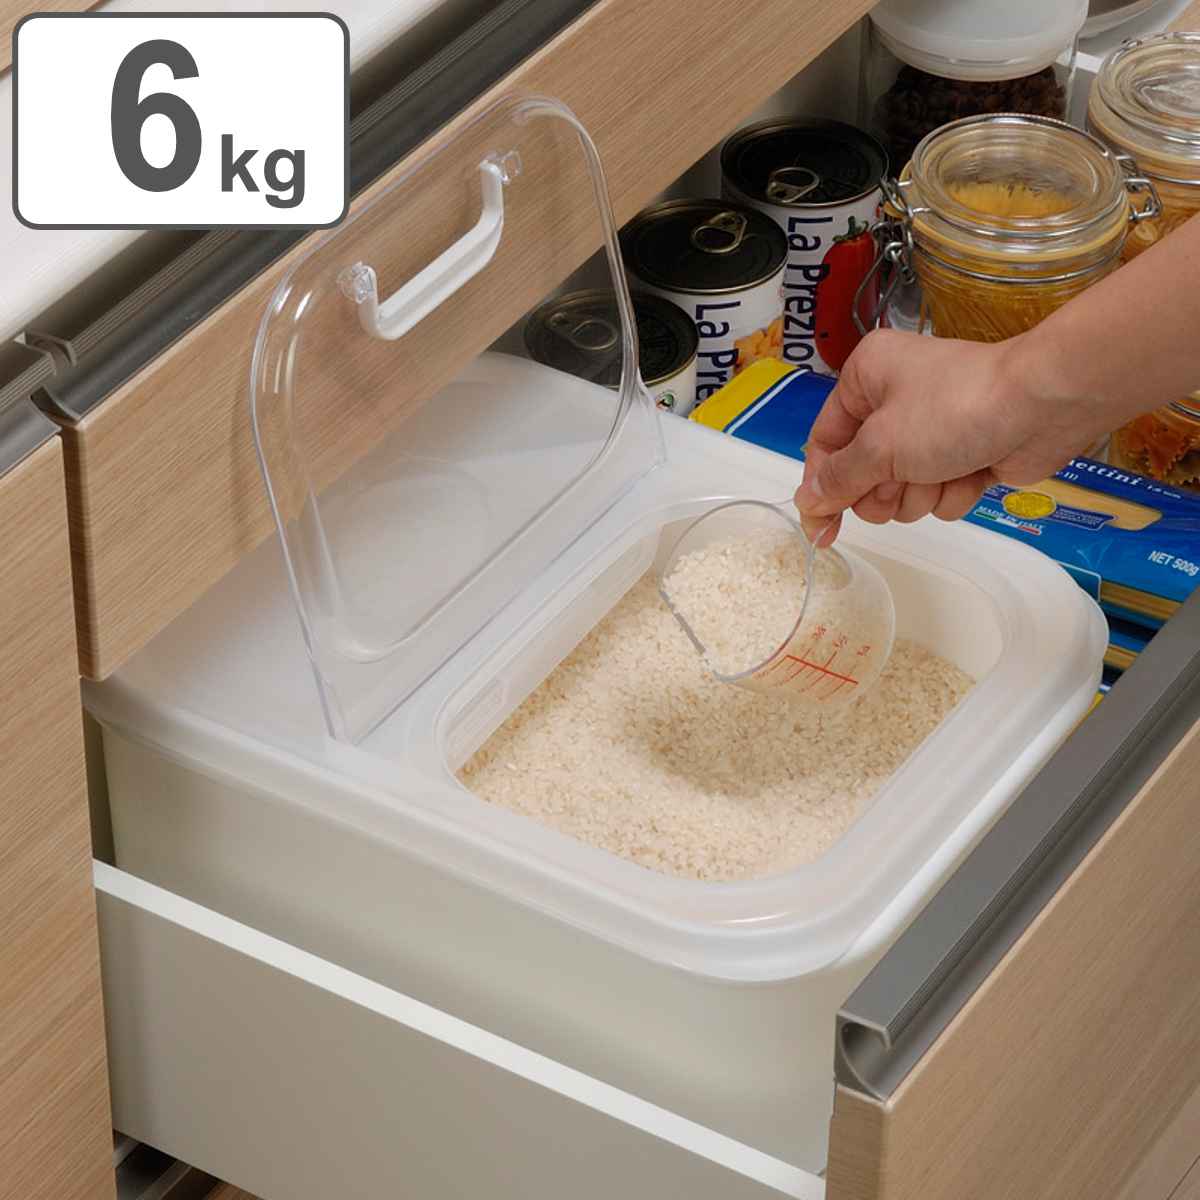 米びつ 気くばり米びつ 6kg ライスボックス